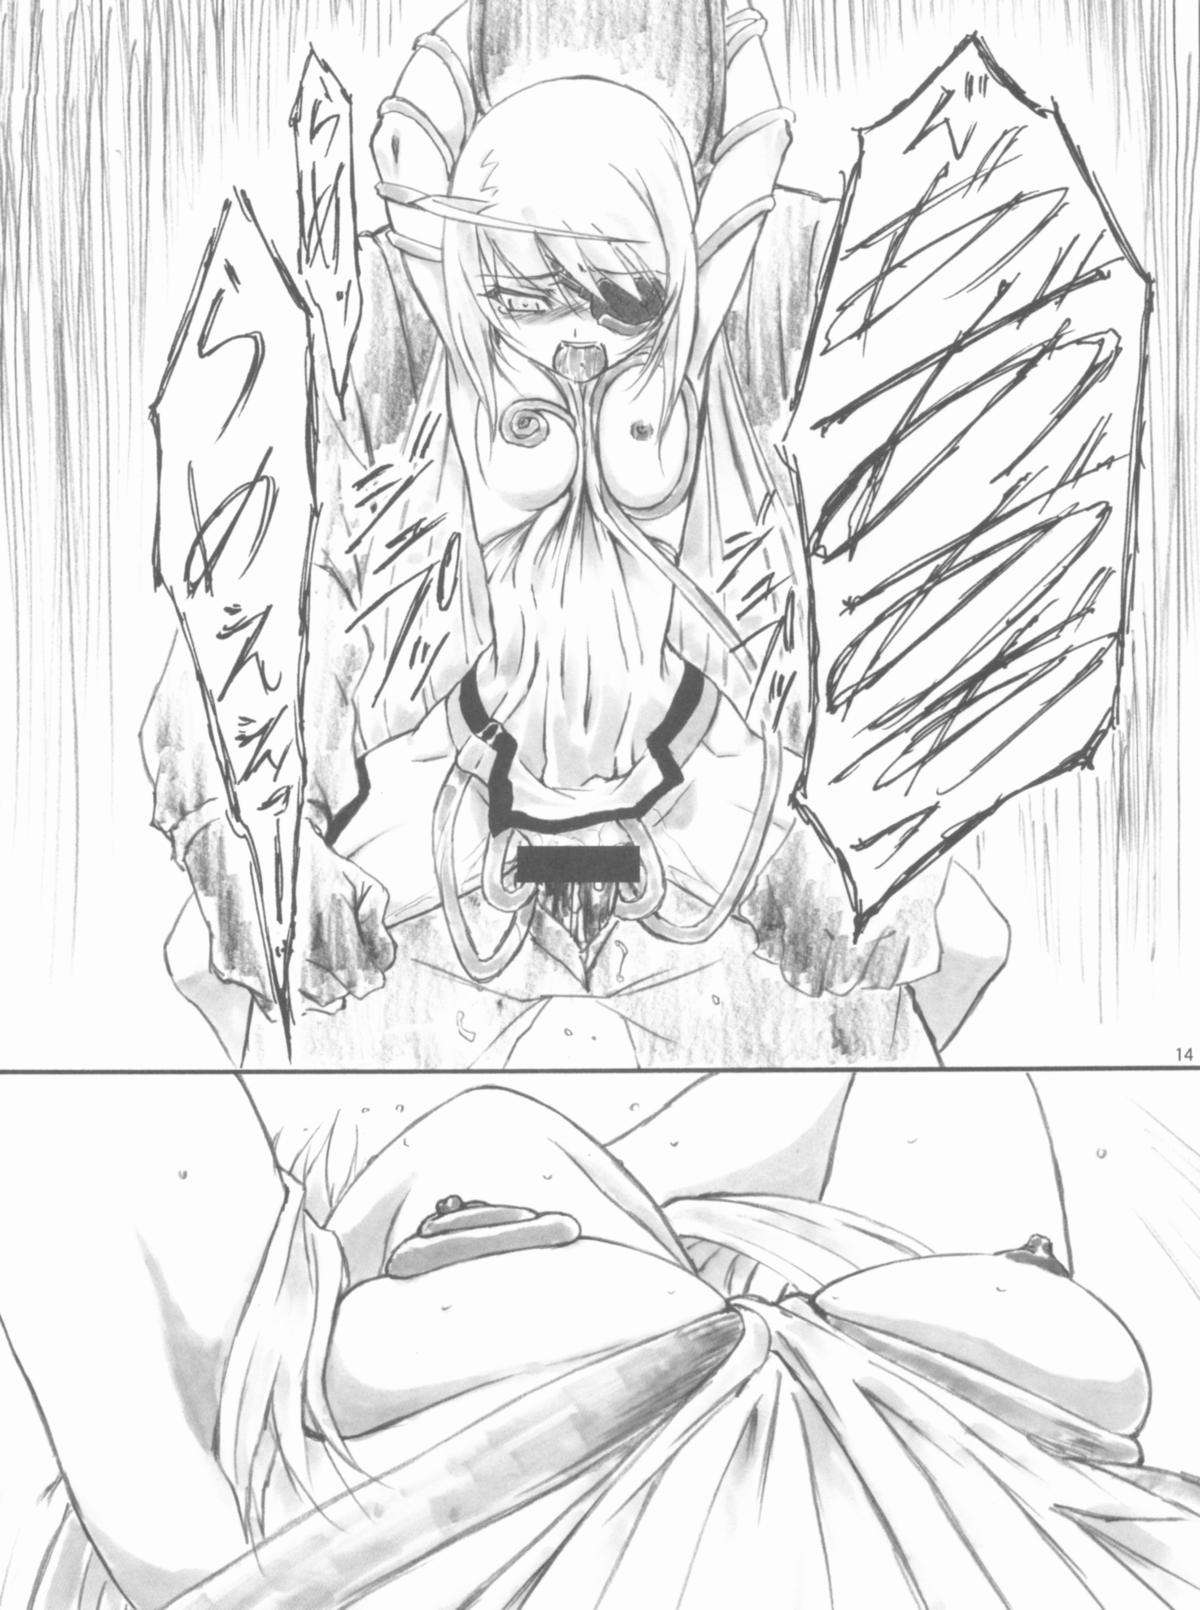 [AXZ (Shinobu Akira)] Angel's stroke 57 Infinite Laura! (IS <Infinite Stratos>) page 15 full